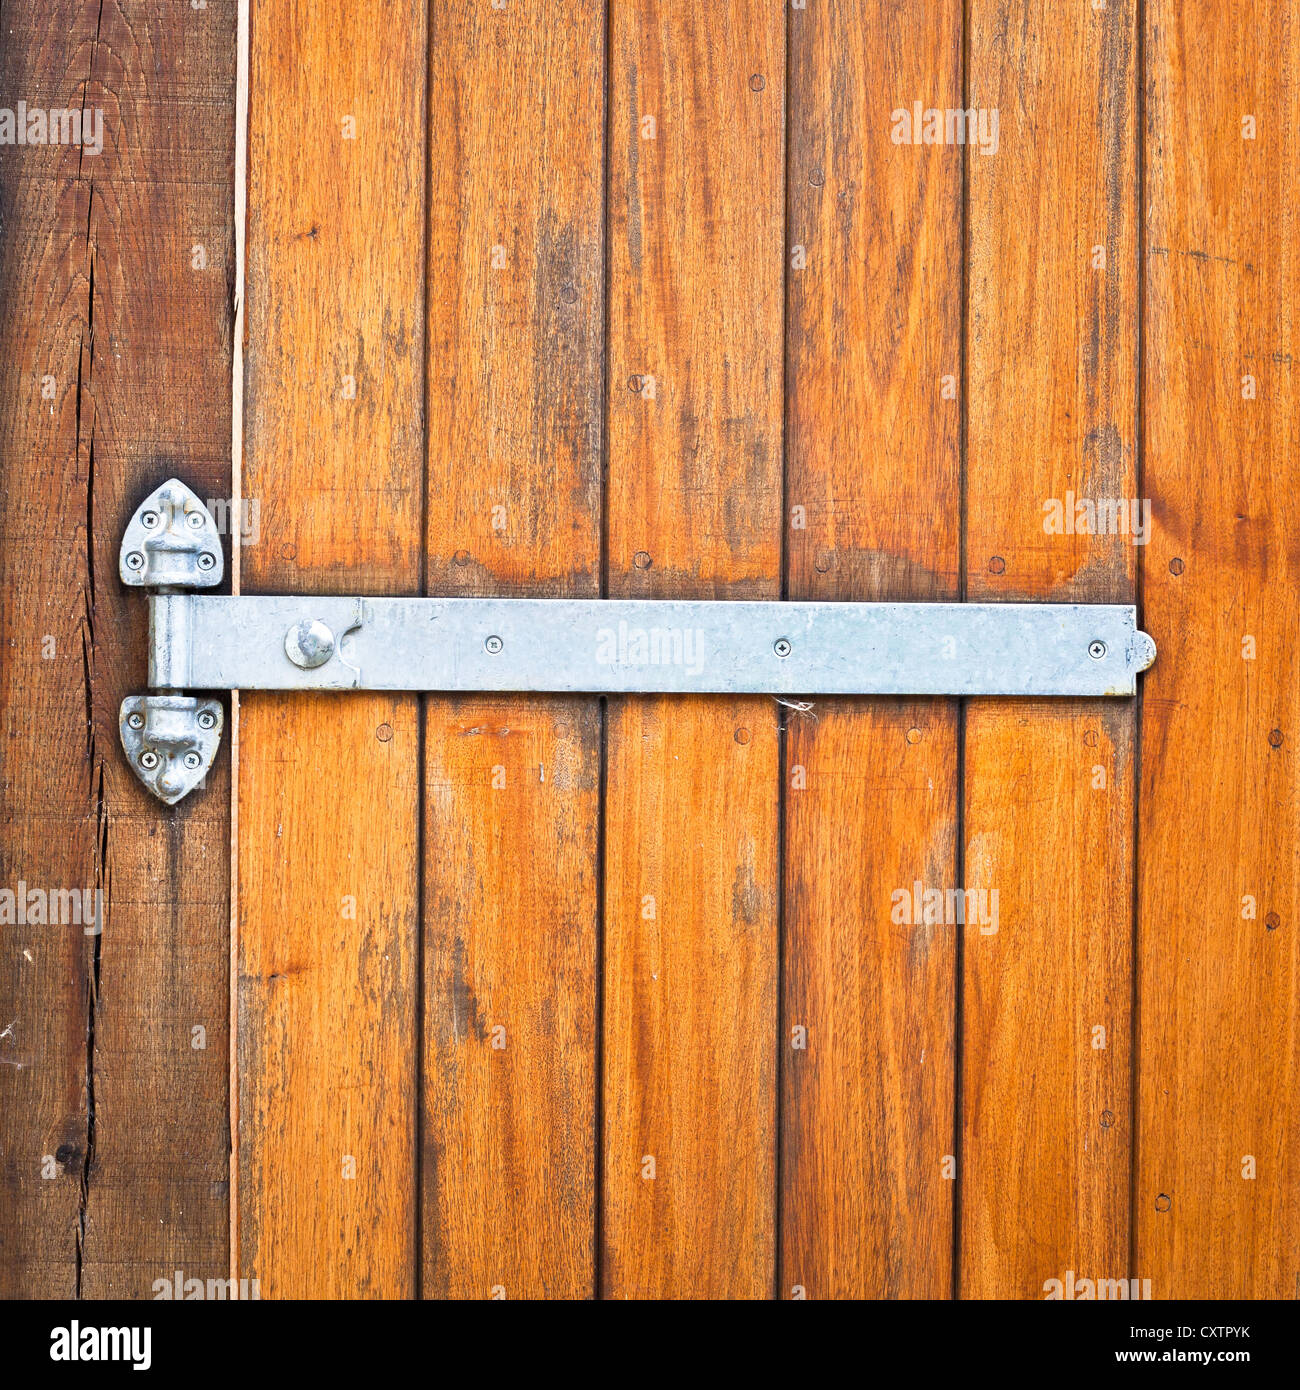 Ein modernes Metall Scharnier auf eine Holztür Stockfotografie - Alamy